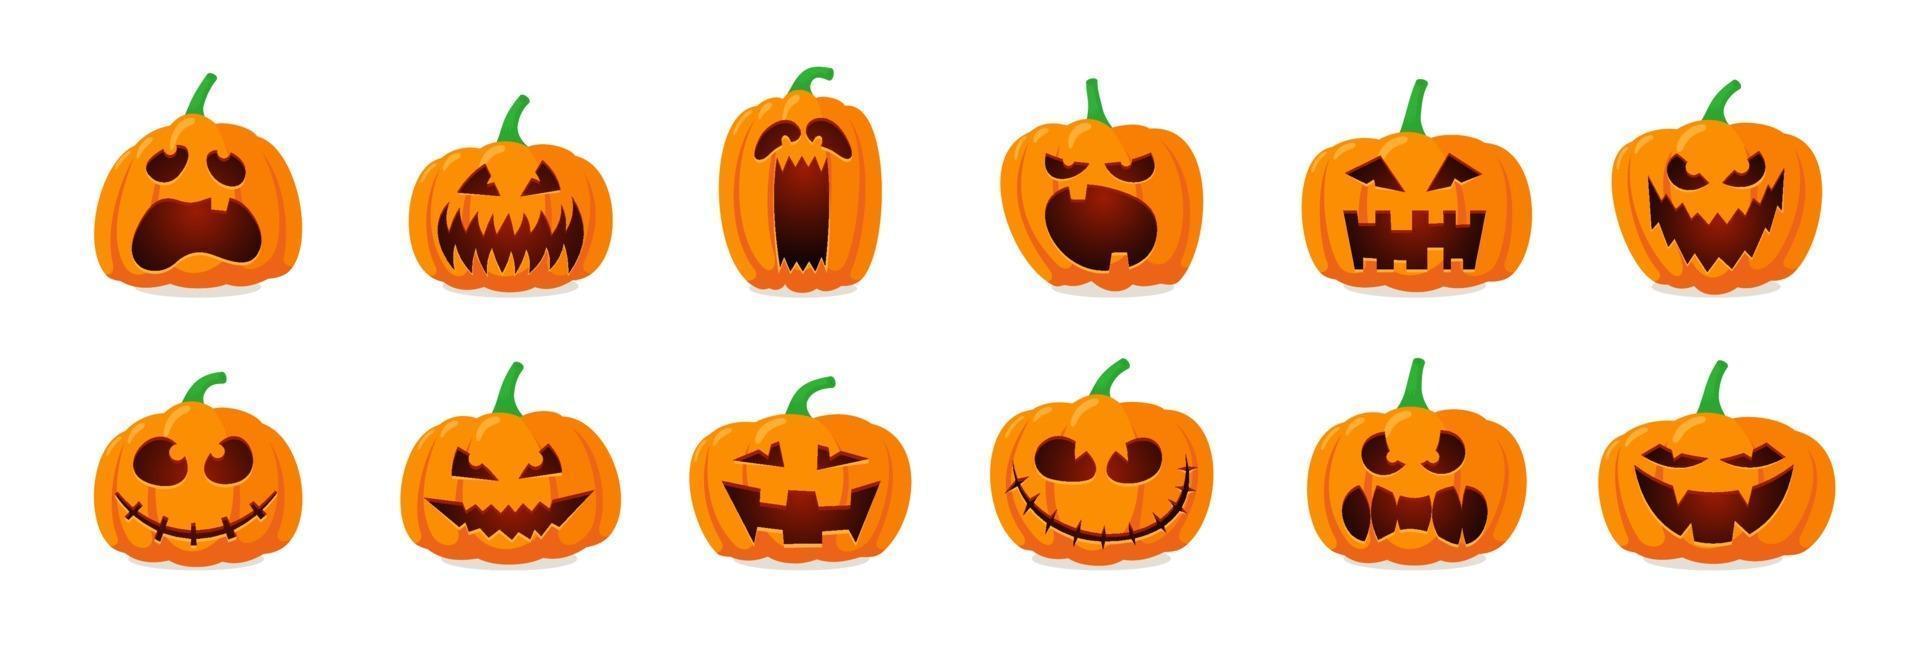 Halloween Monster Jack Laterne orange Kürbis geschnitztes unheimliches Gesicht Set vektor